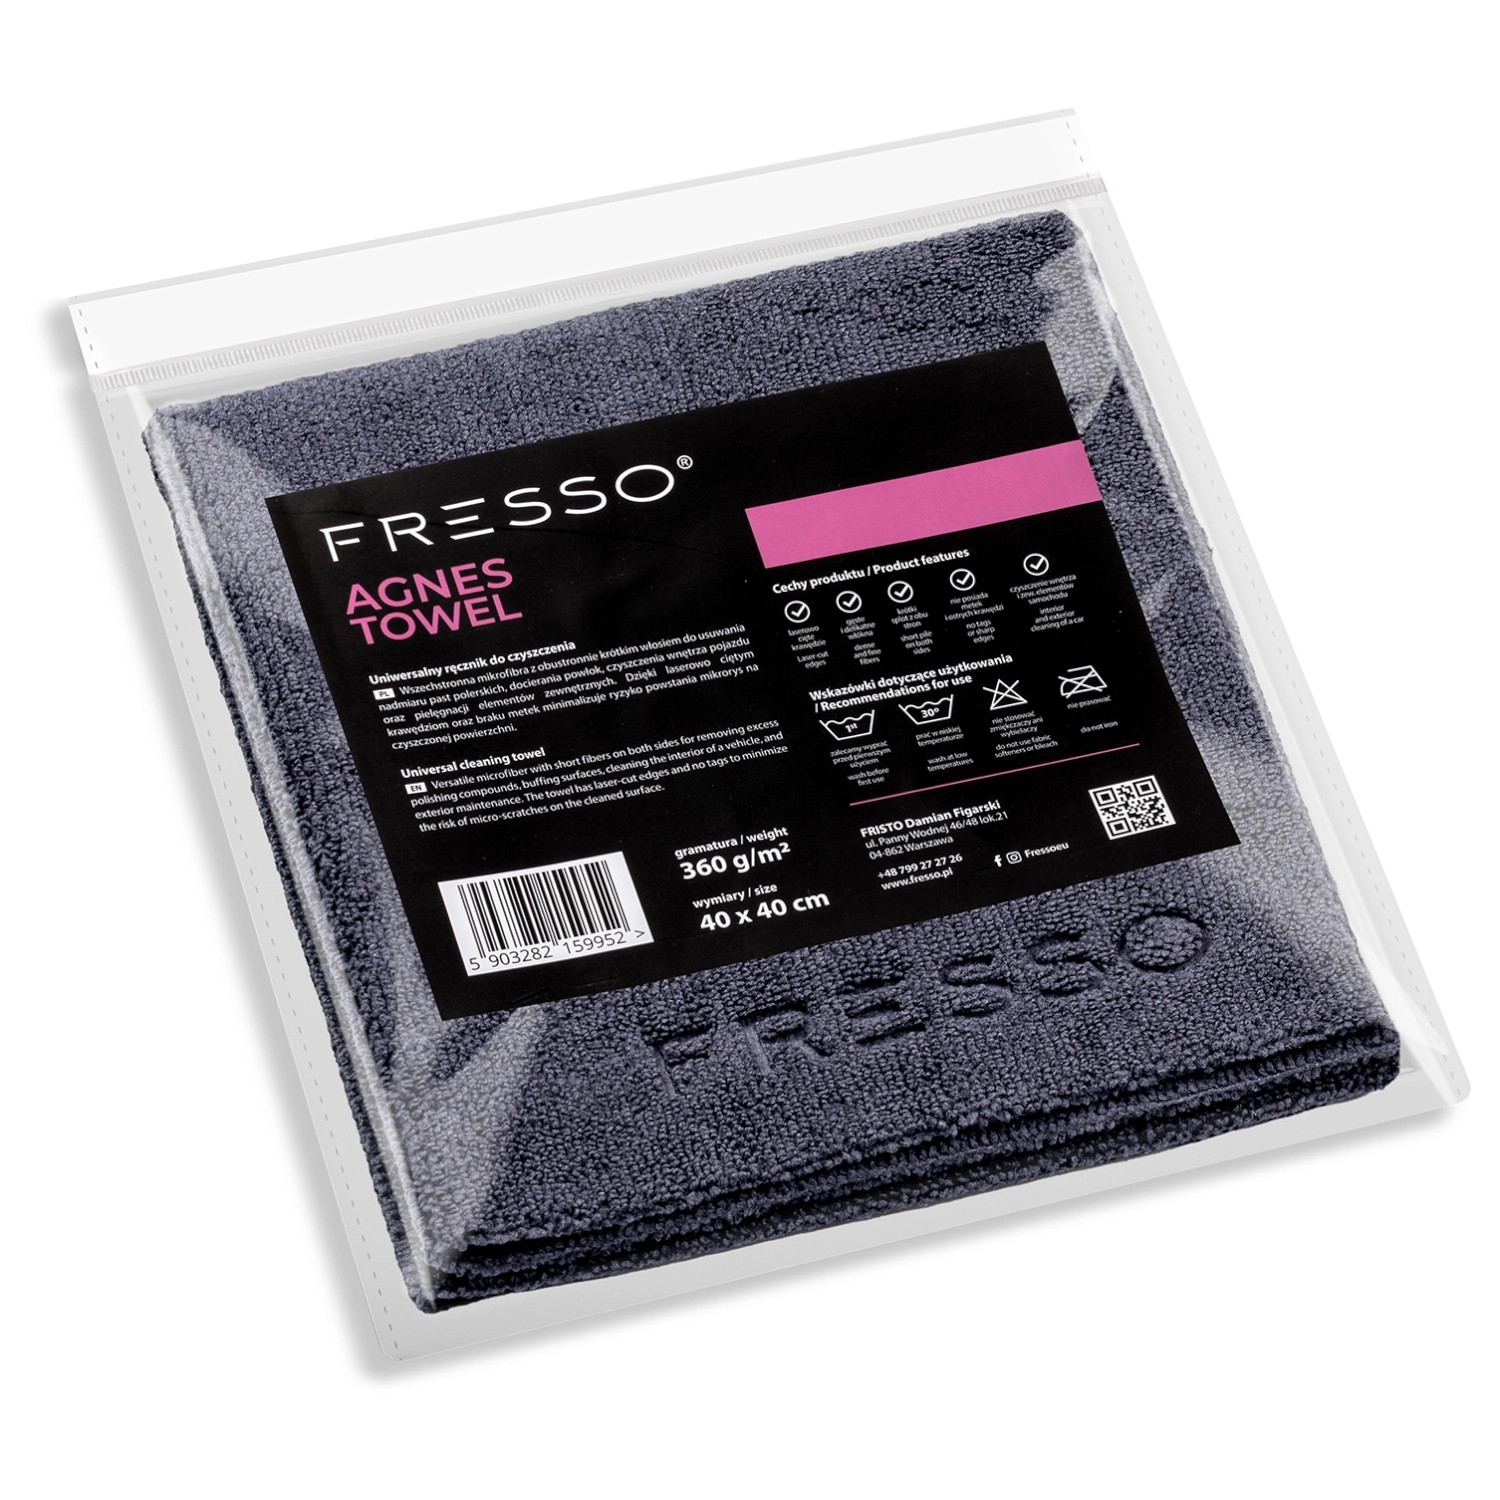 Image of Fresso Agnes Towel - uniwersalna mikrofibra z krótkim włosiem, 360gsm, 40x40cm